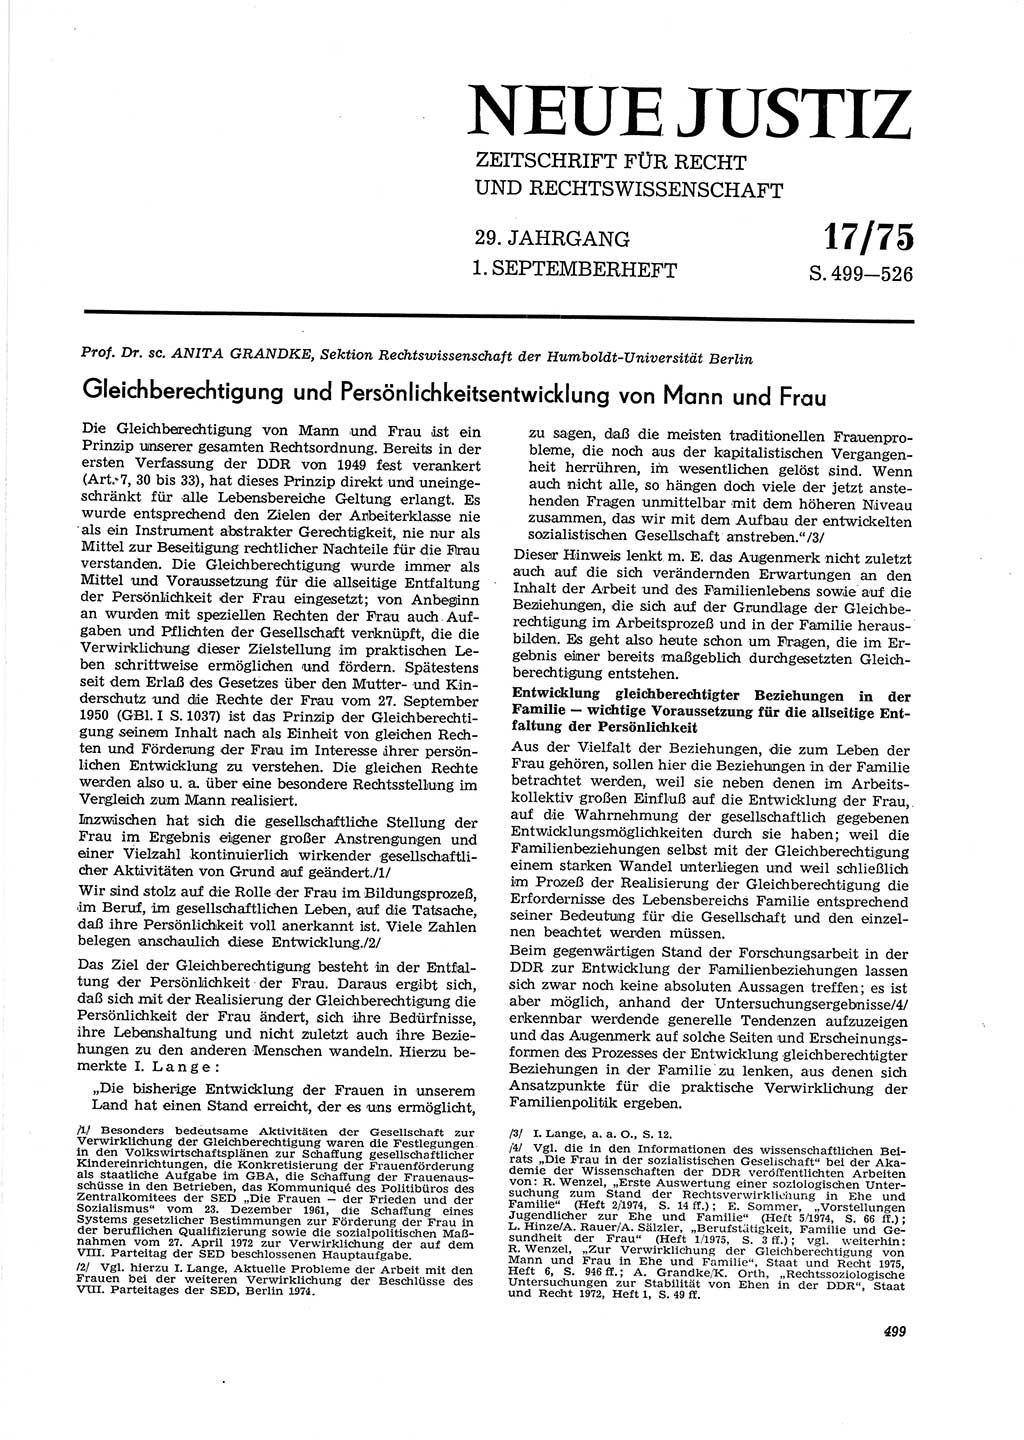 Neue Justiz (NJ), Zeitschrift für Recht und Rechtswissenschaft [Deutsche Demokratische Republik (DDR)], 29. Jahrgang 1975, Seite 499 (NJ DDR 1975, S. 499)